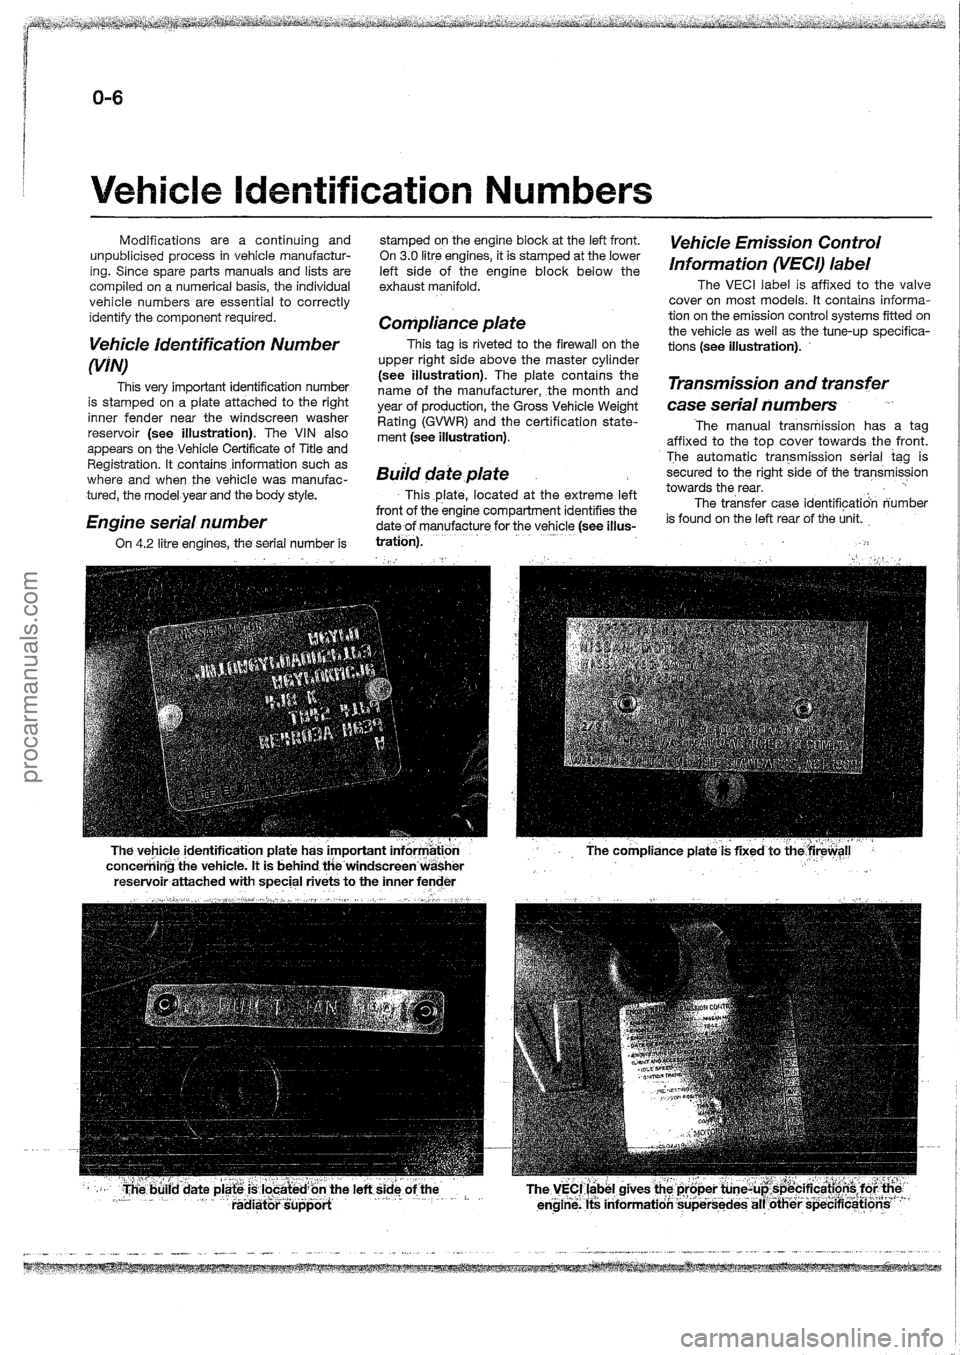 FORD MAVERICK 1988  Service Repair Manual procarmanuals.com 